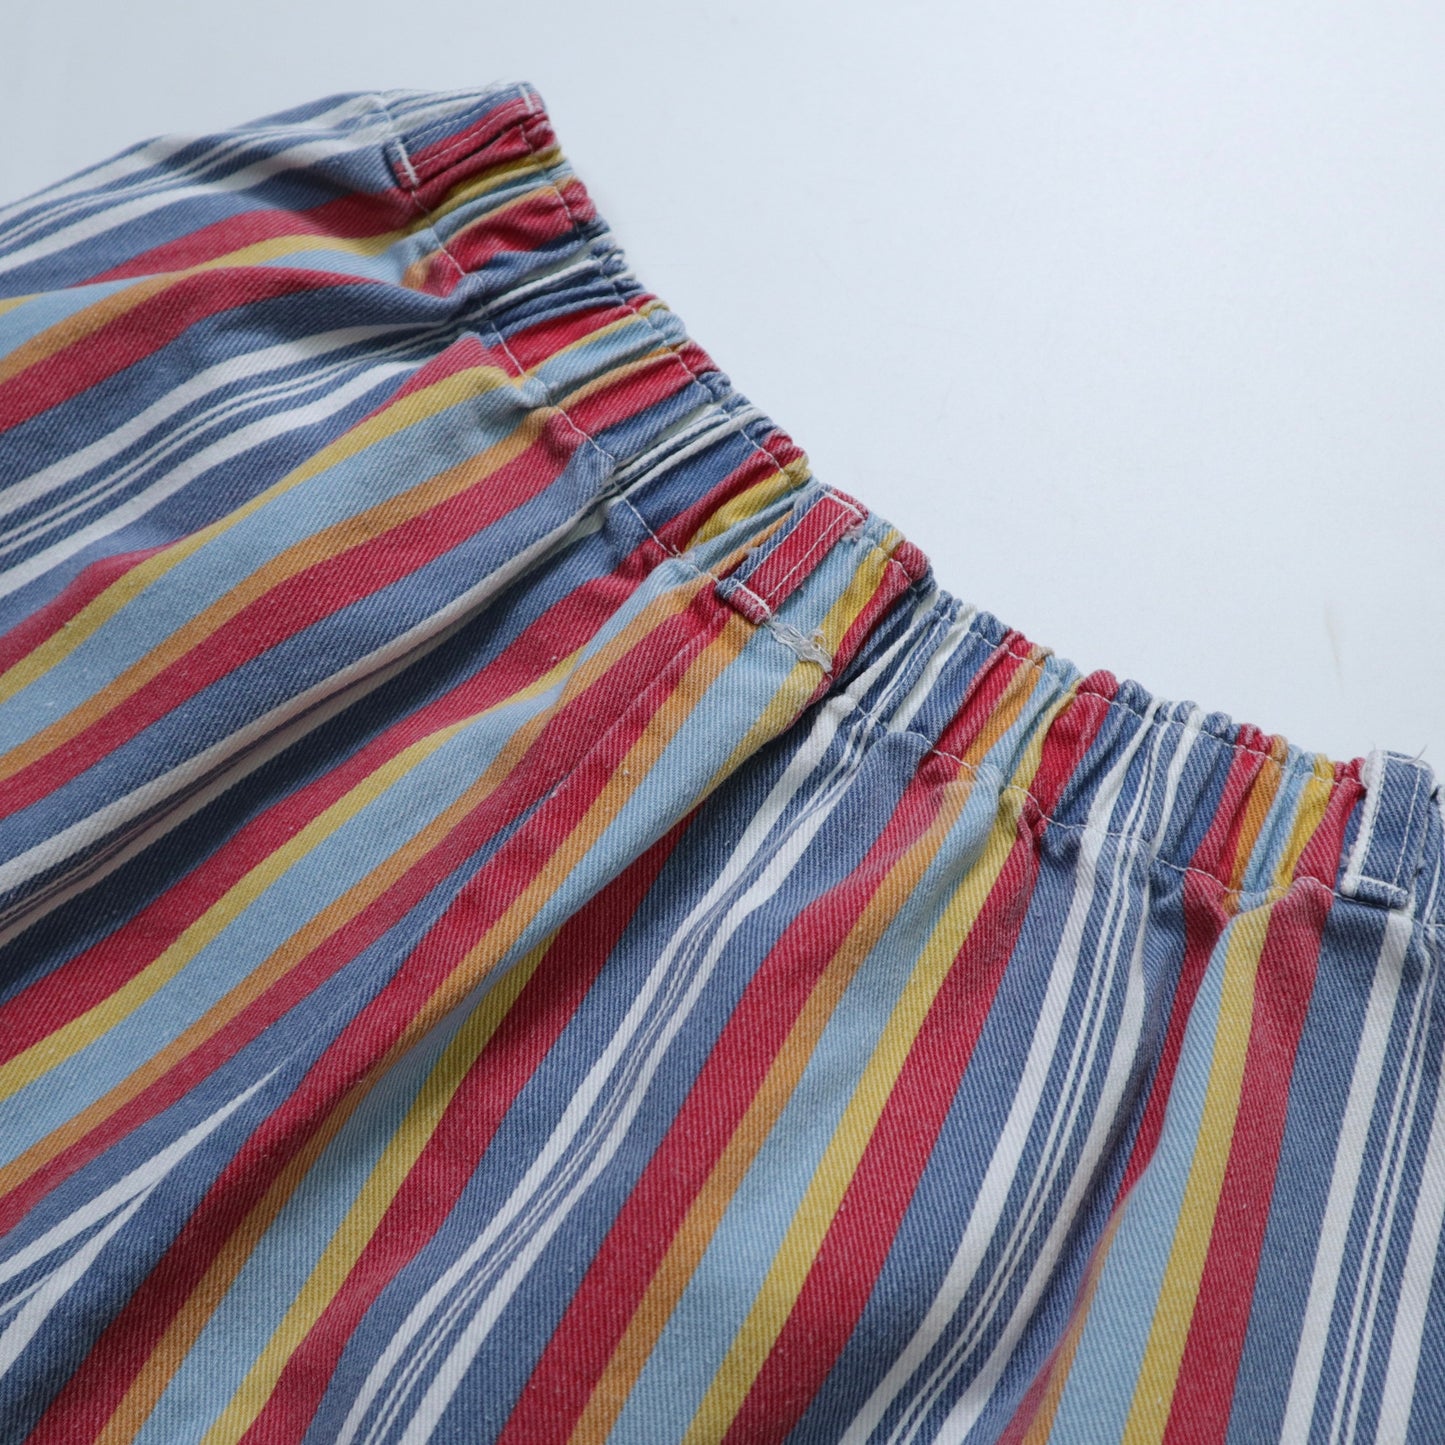 80s American-made colorful striped twill cotton shorts Talon42 zipper